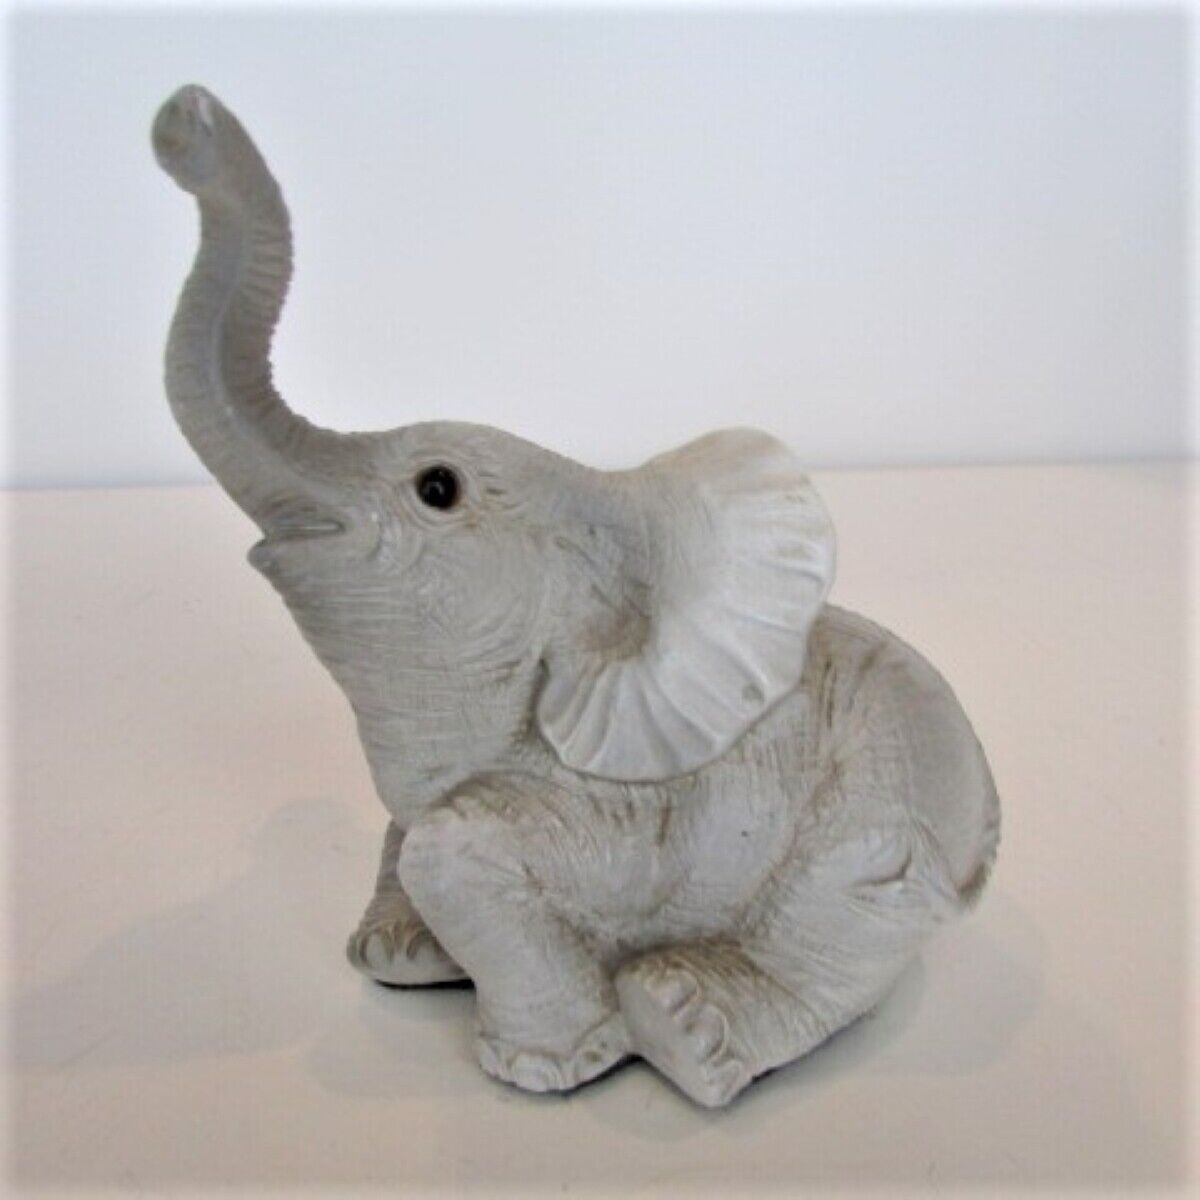 Gray Elephant Figurine 4.5" X 4.5